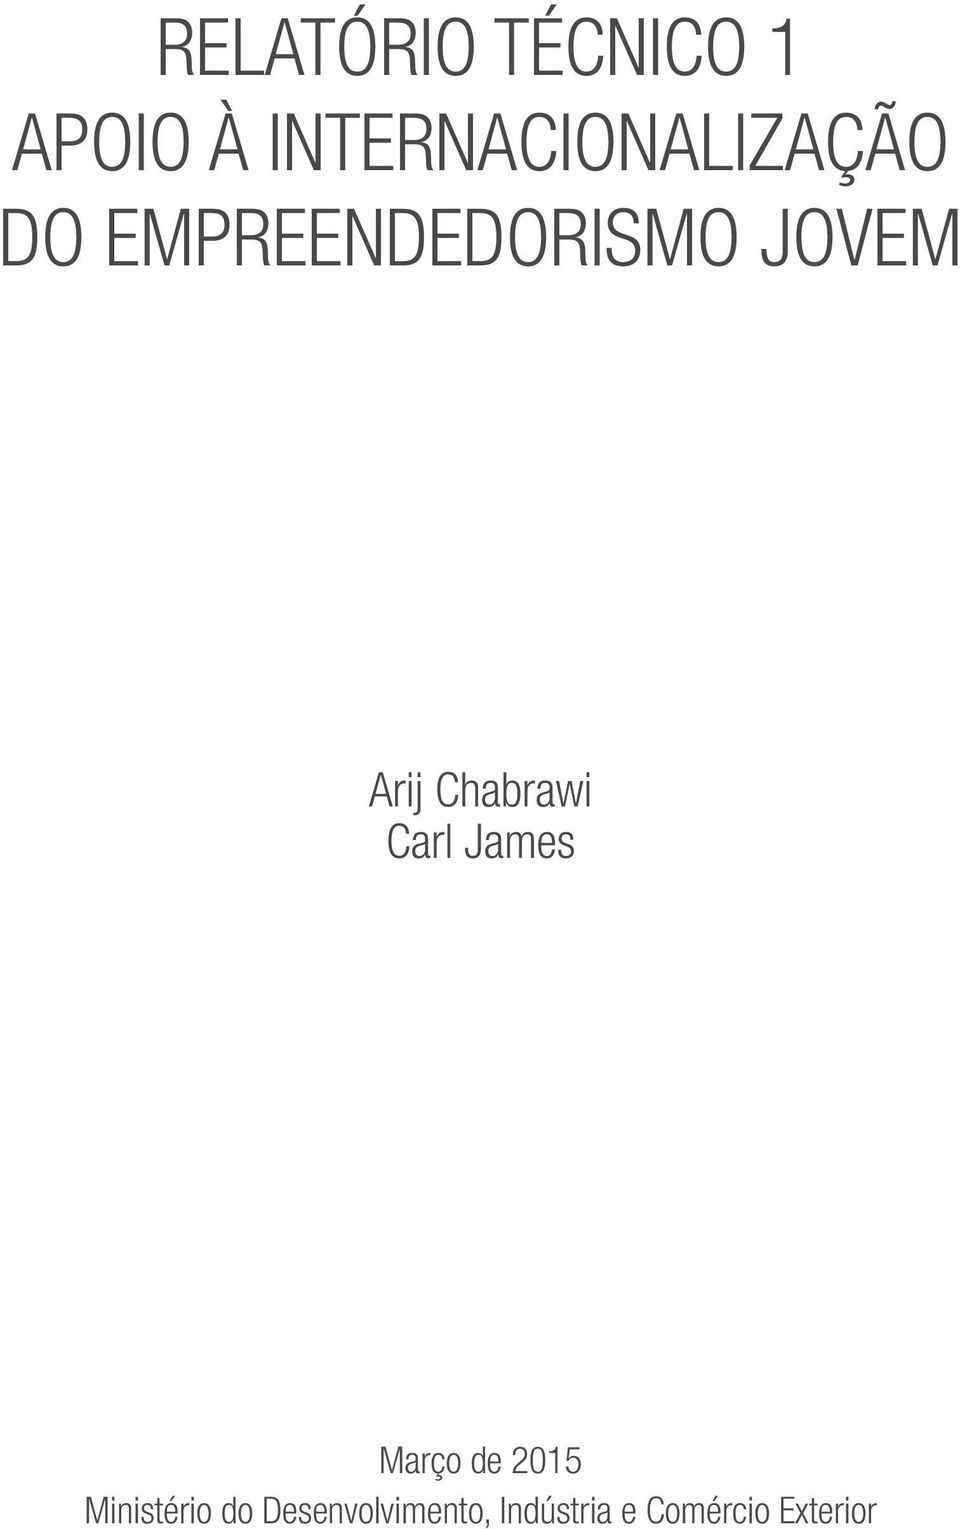 JOVEM Arij Chabrawi Carl James Março de